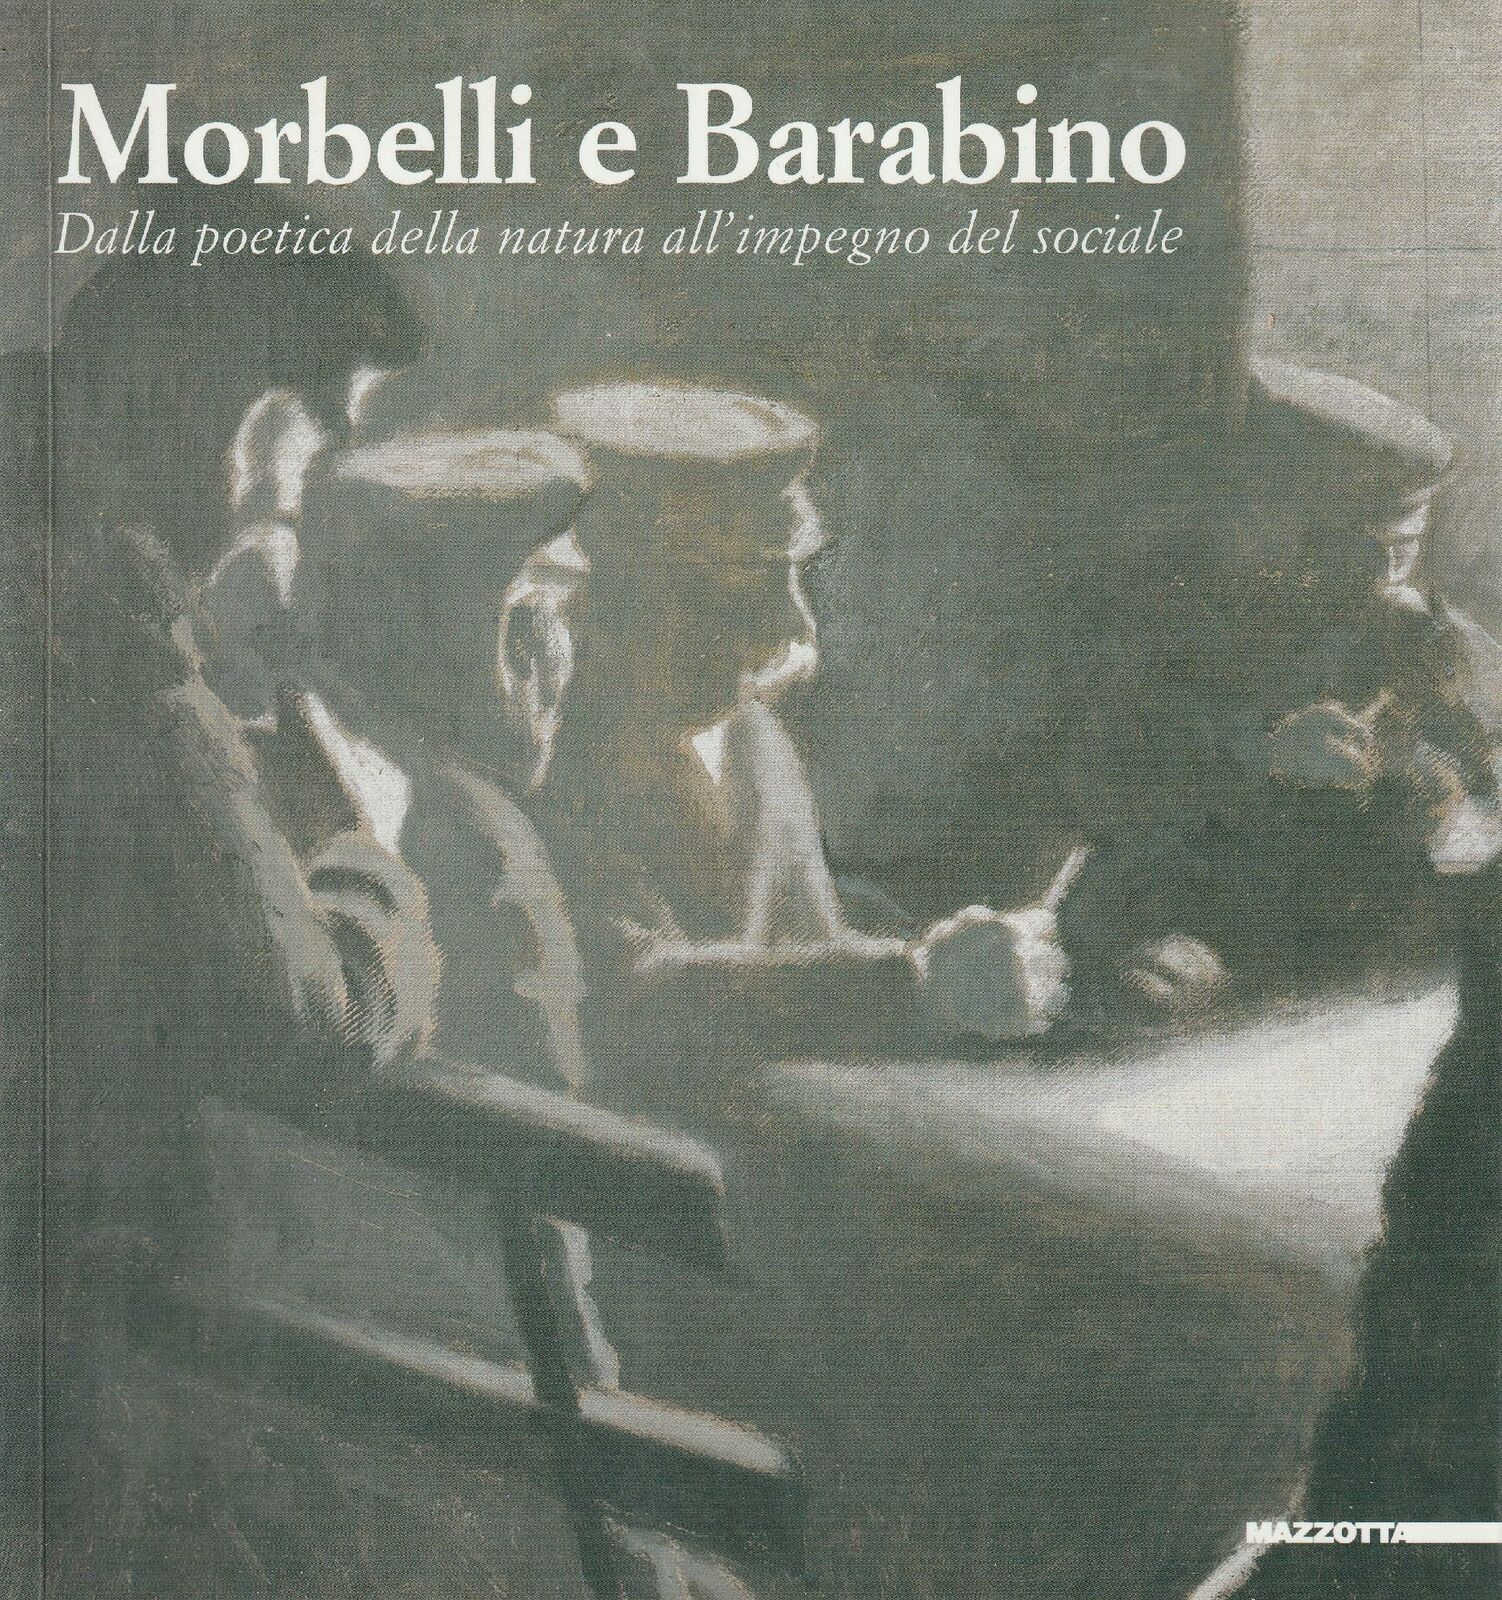 Copertina di Morbelli e Barabino